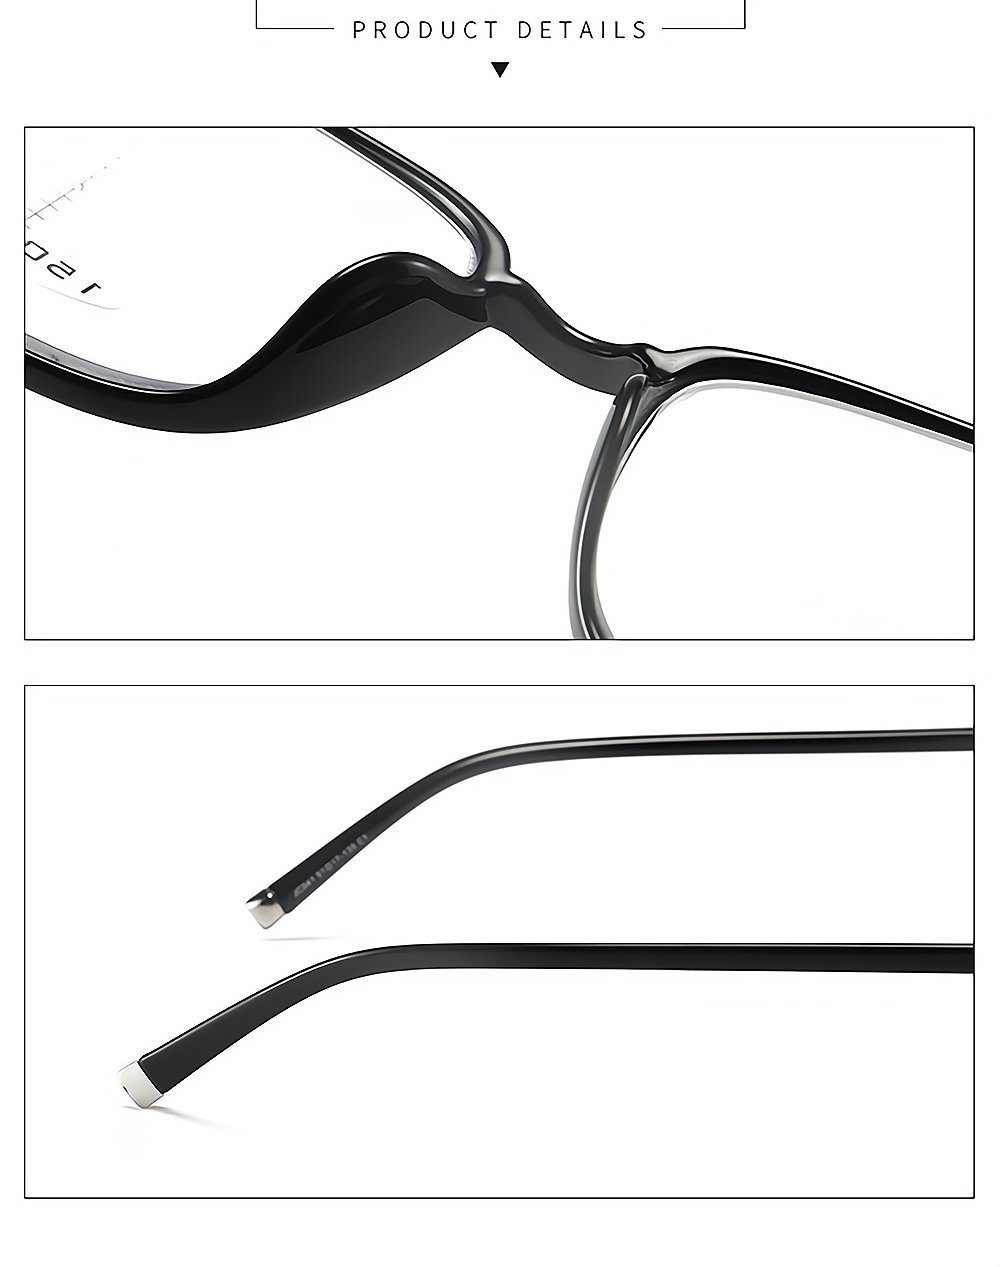 PACIEA Rahmen bedruckte presbyopische Mode schwarz Lesebrille blaue Gläser anti